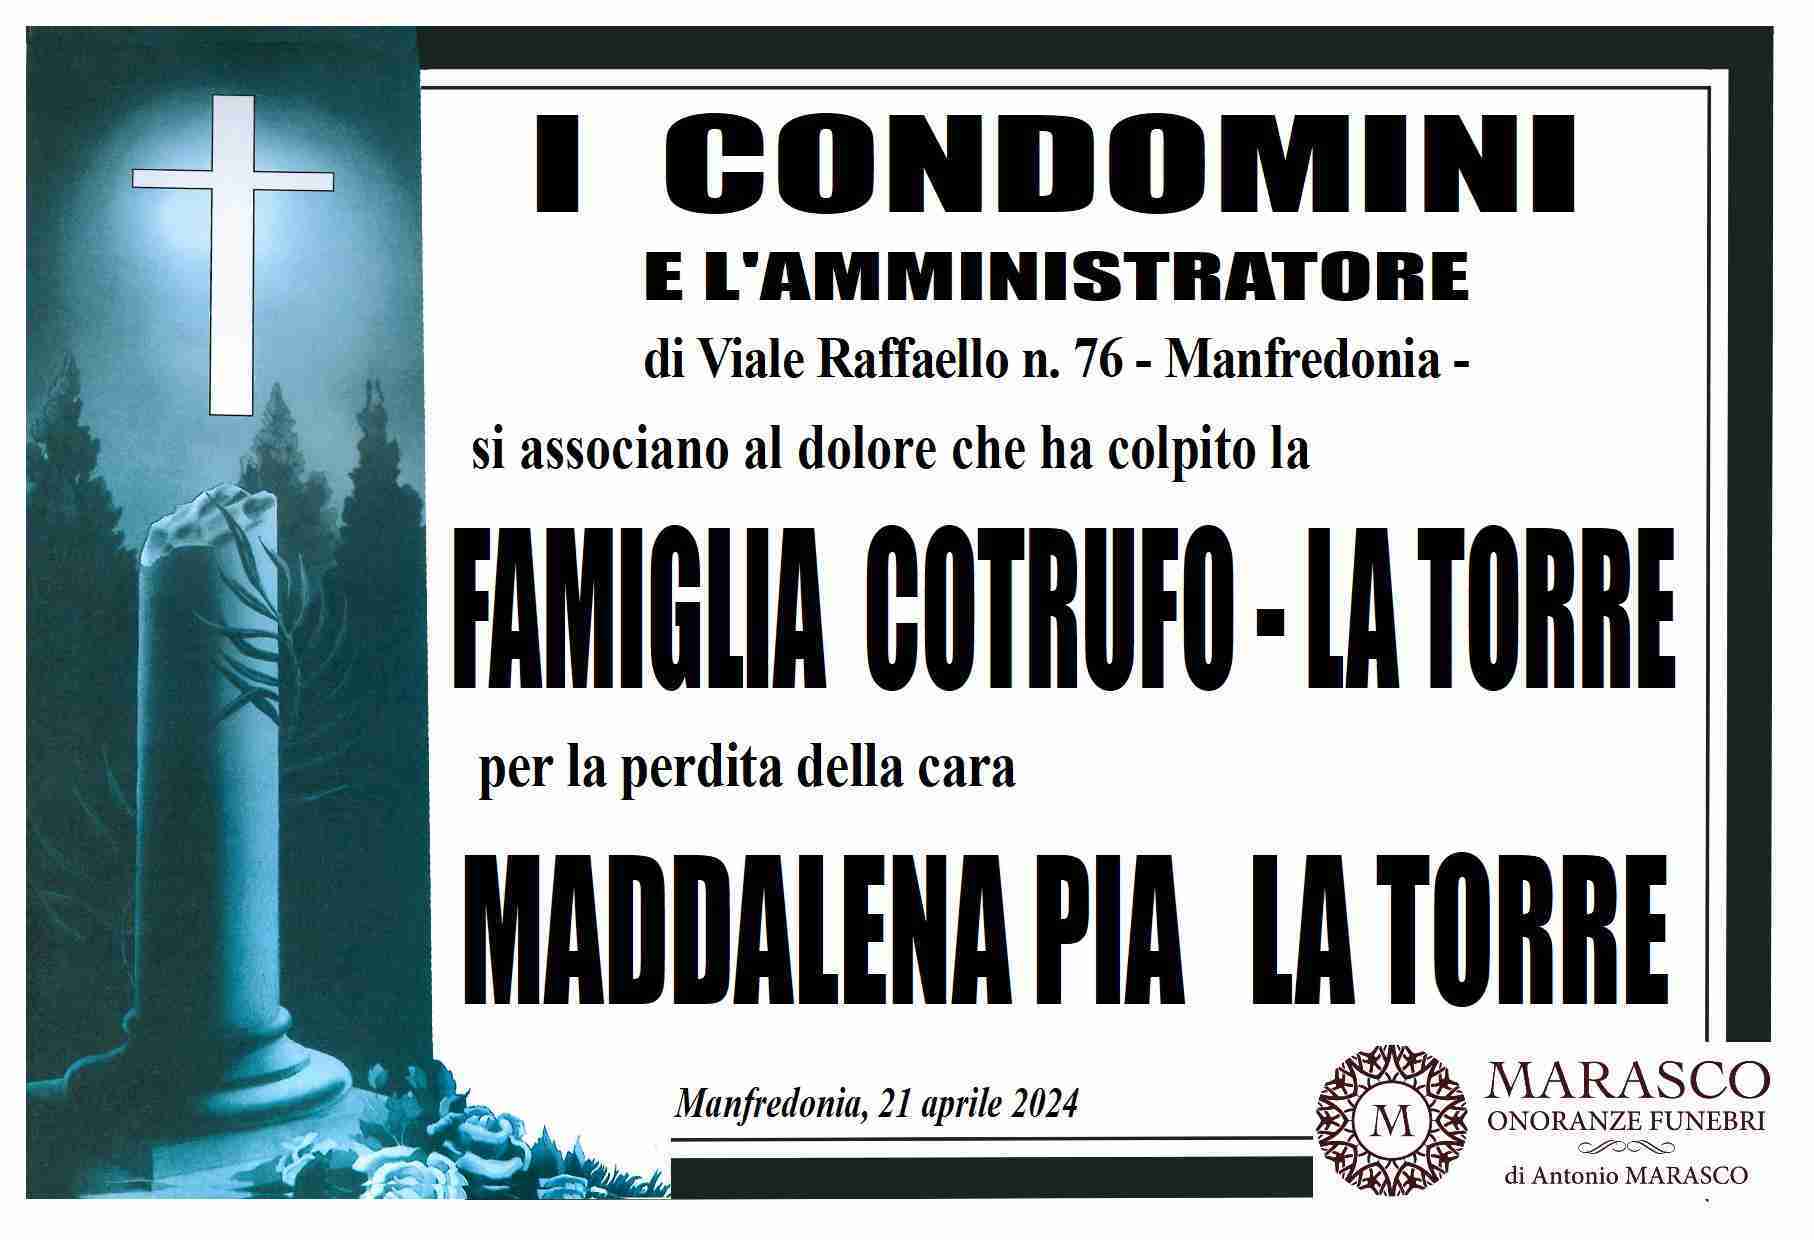 Maddalena Pia La Torre